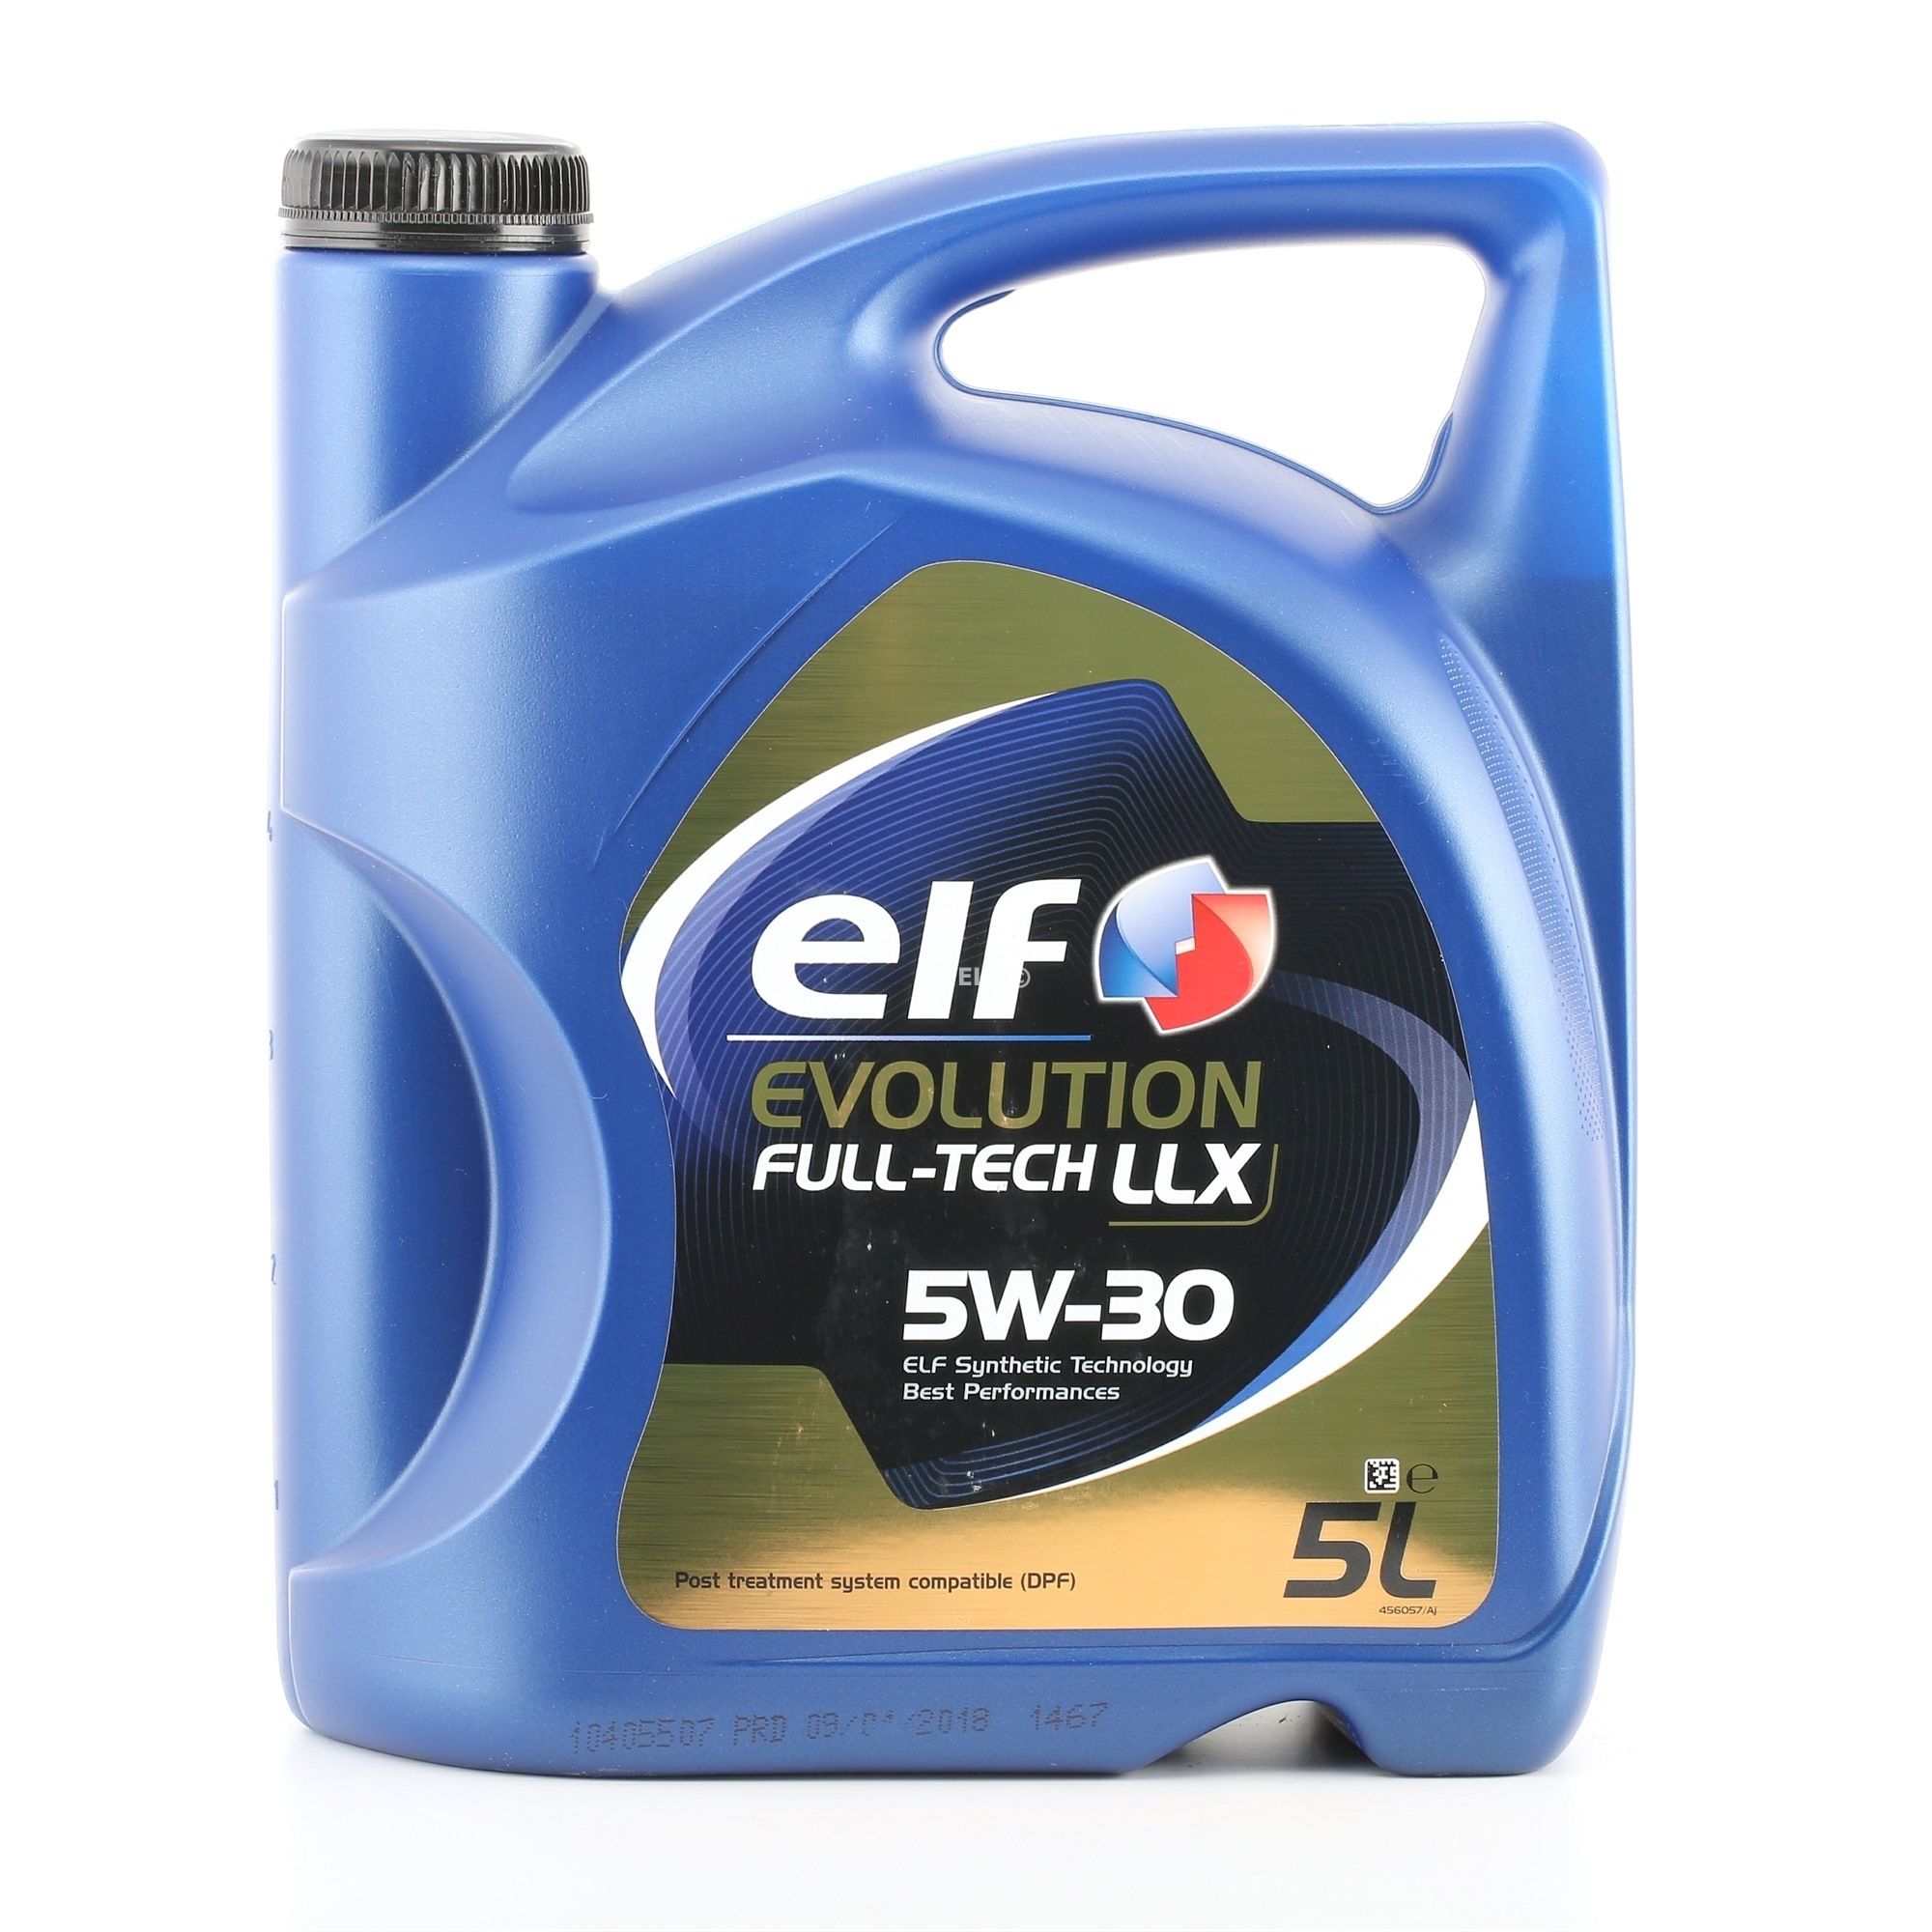 2194890 ELF Evolution, Full-Tech LLX 5W-30, 5l, Olio sintetico Olio motore prezzo